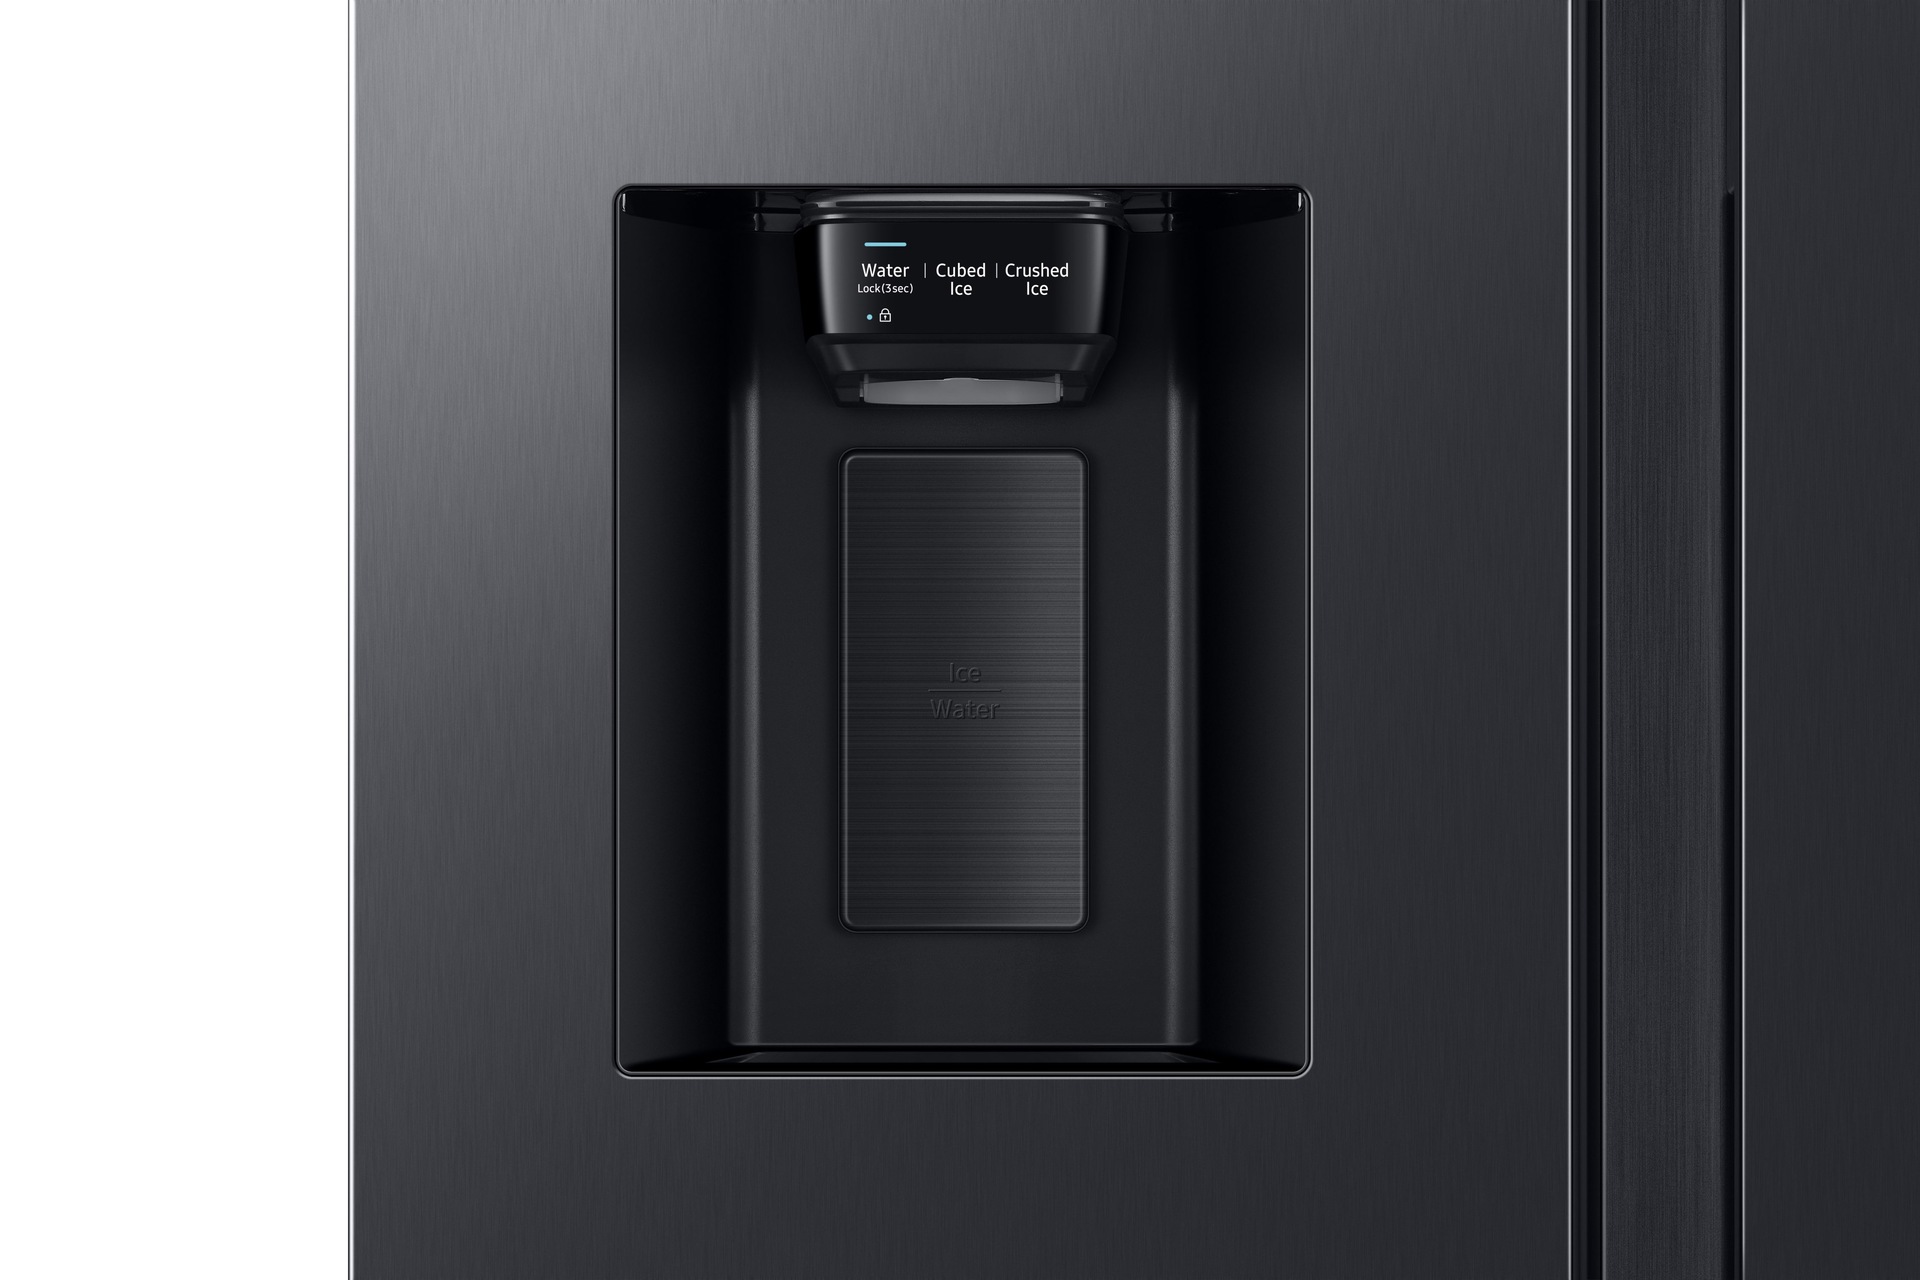 De RS8000BC wordt geïnstalleerd in een keuken met kasten in een ingebouwde look.  Het bekroonde de IF Design Award 2020.